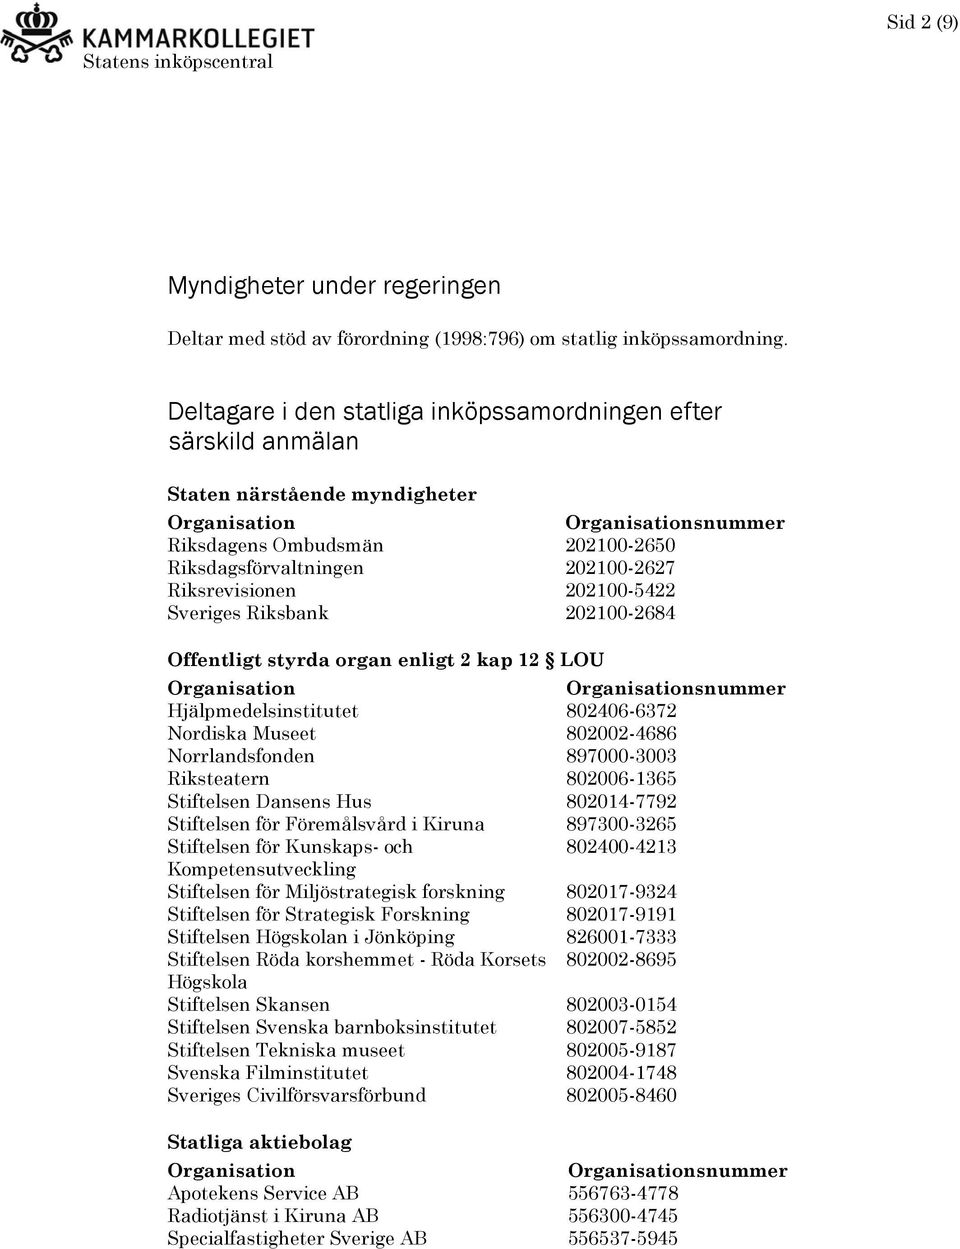 Sveriges Riksbank 202100-2684 Offentligt styrda organ enligt 2 kap 12 LOU snummer Hjälpmedelsinstitutet 802406-6372 Nordiska Museet 802002-4686 Norrlandsfonden 897000-3003 Riksteatern 802006-1365